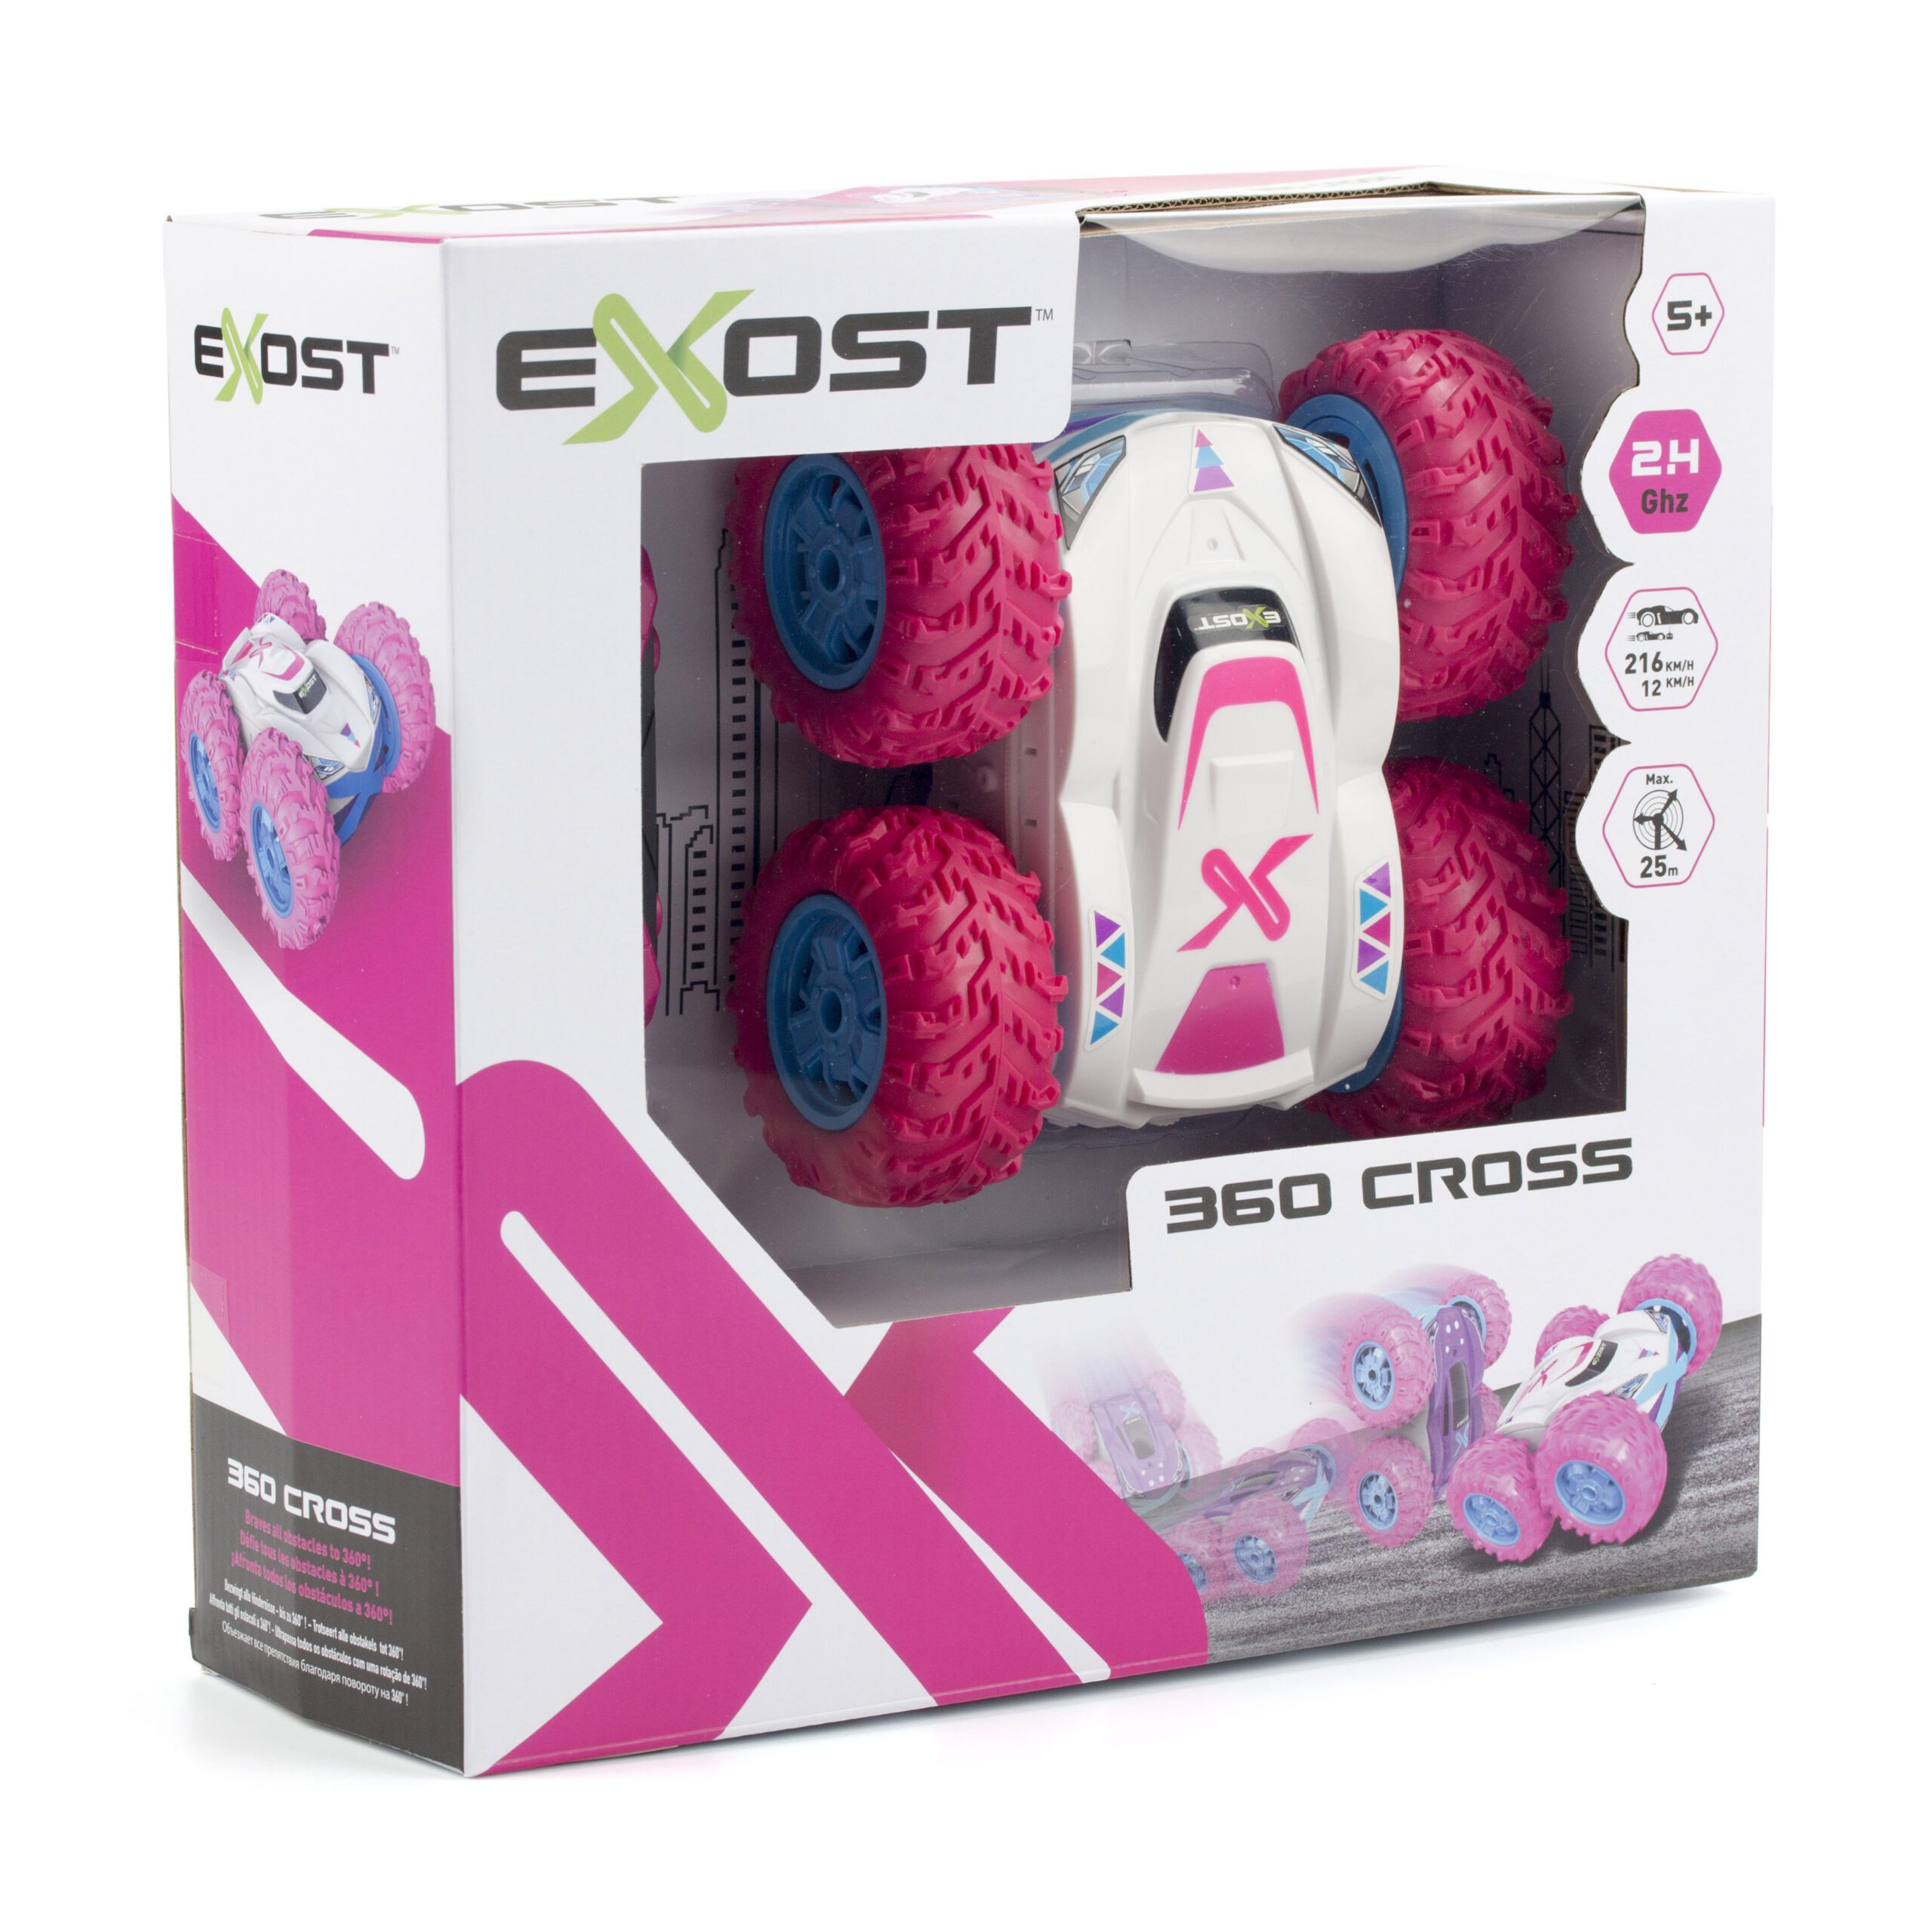 EXOST 360 Cross Rose – Silverlit